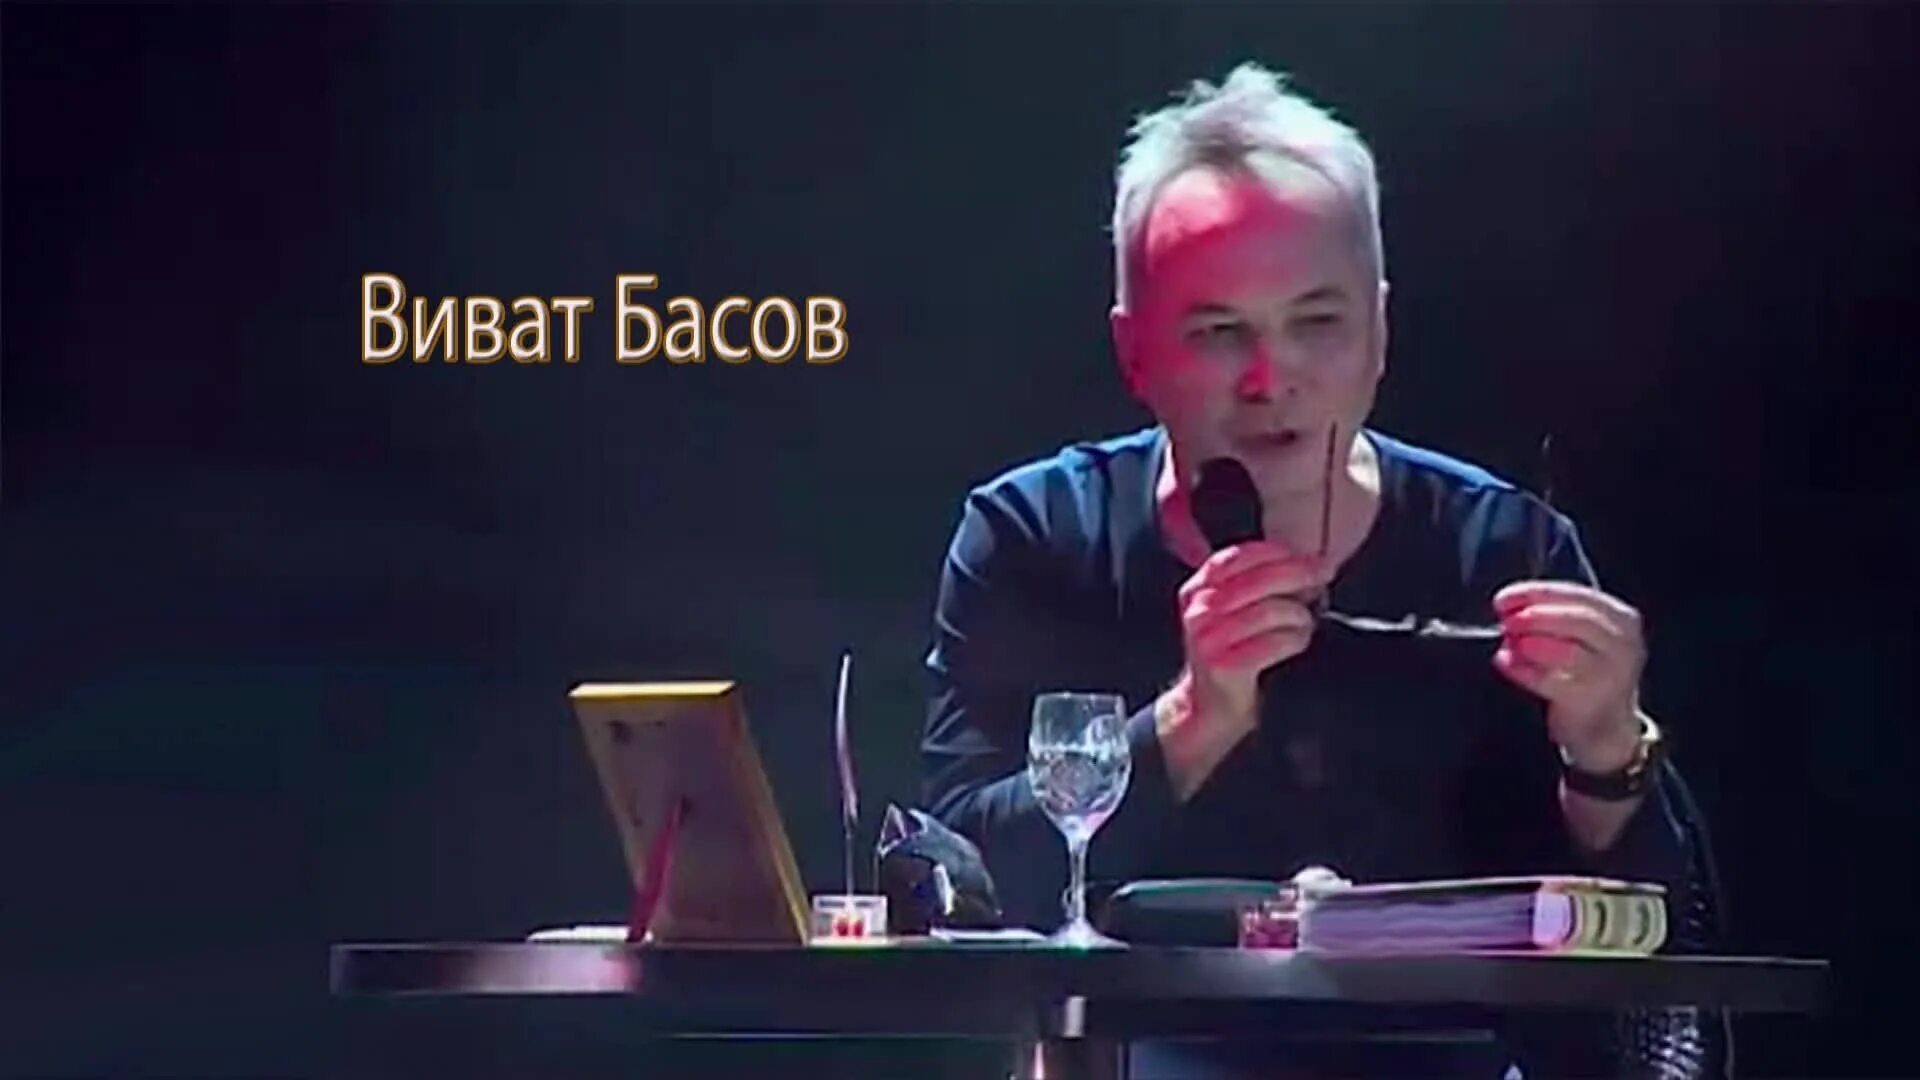 Виват Басов. Виват певец. Правда и ложь - Виват Басов. Певец Виват Басов фото.